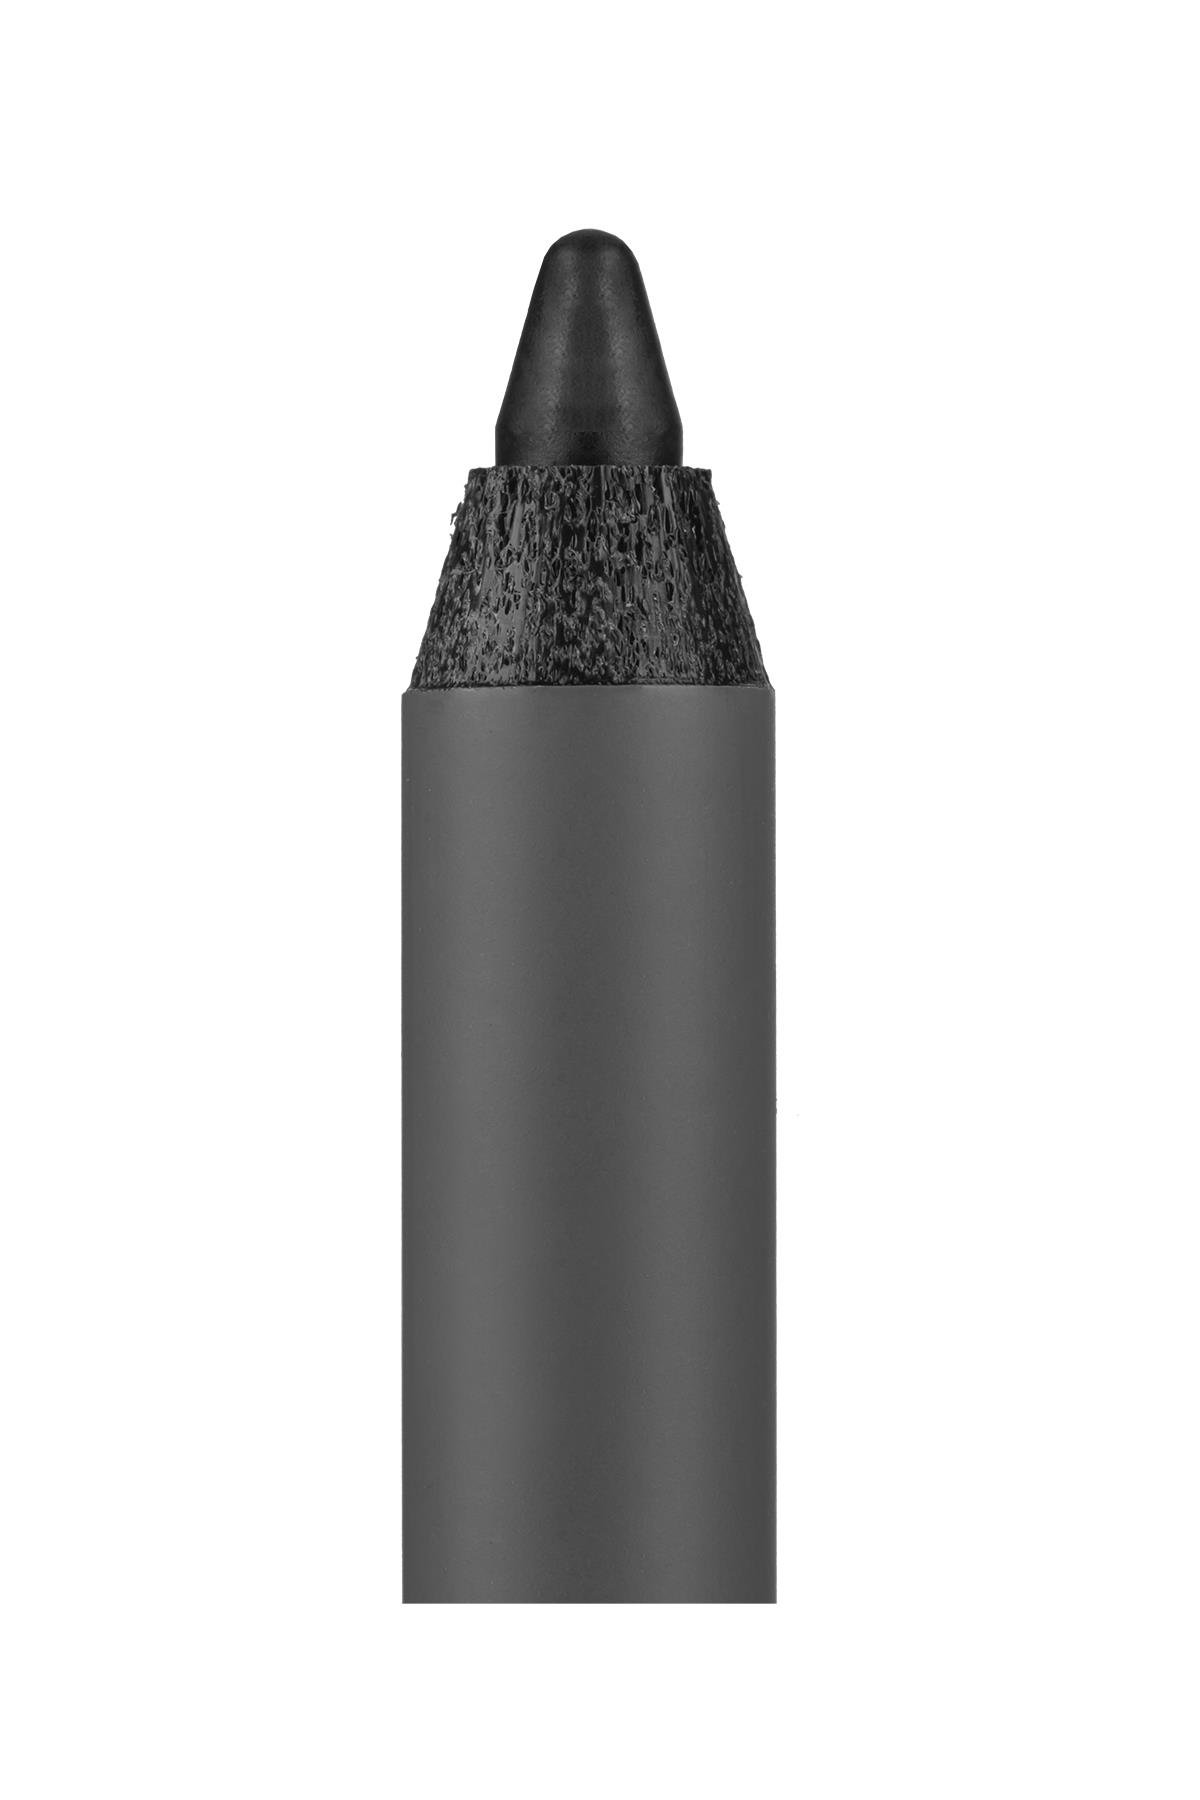 Suya Dayanıklı Siyah Göz Kalemi - 13 Saat Kalıcı Etki - Extreme Lasting  Effect Eye Pencil - Alix Avien